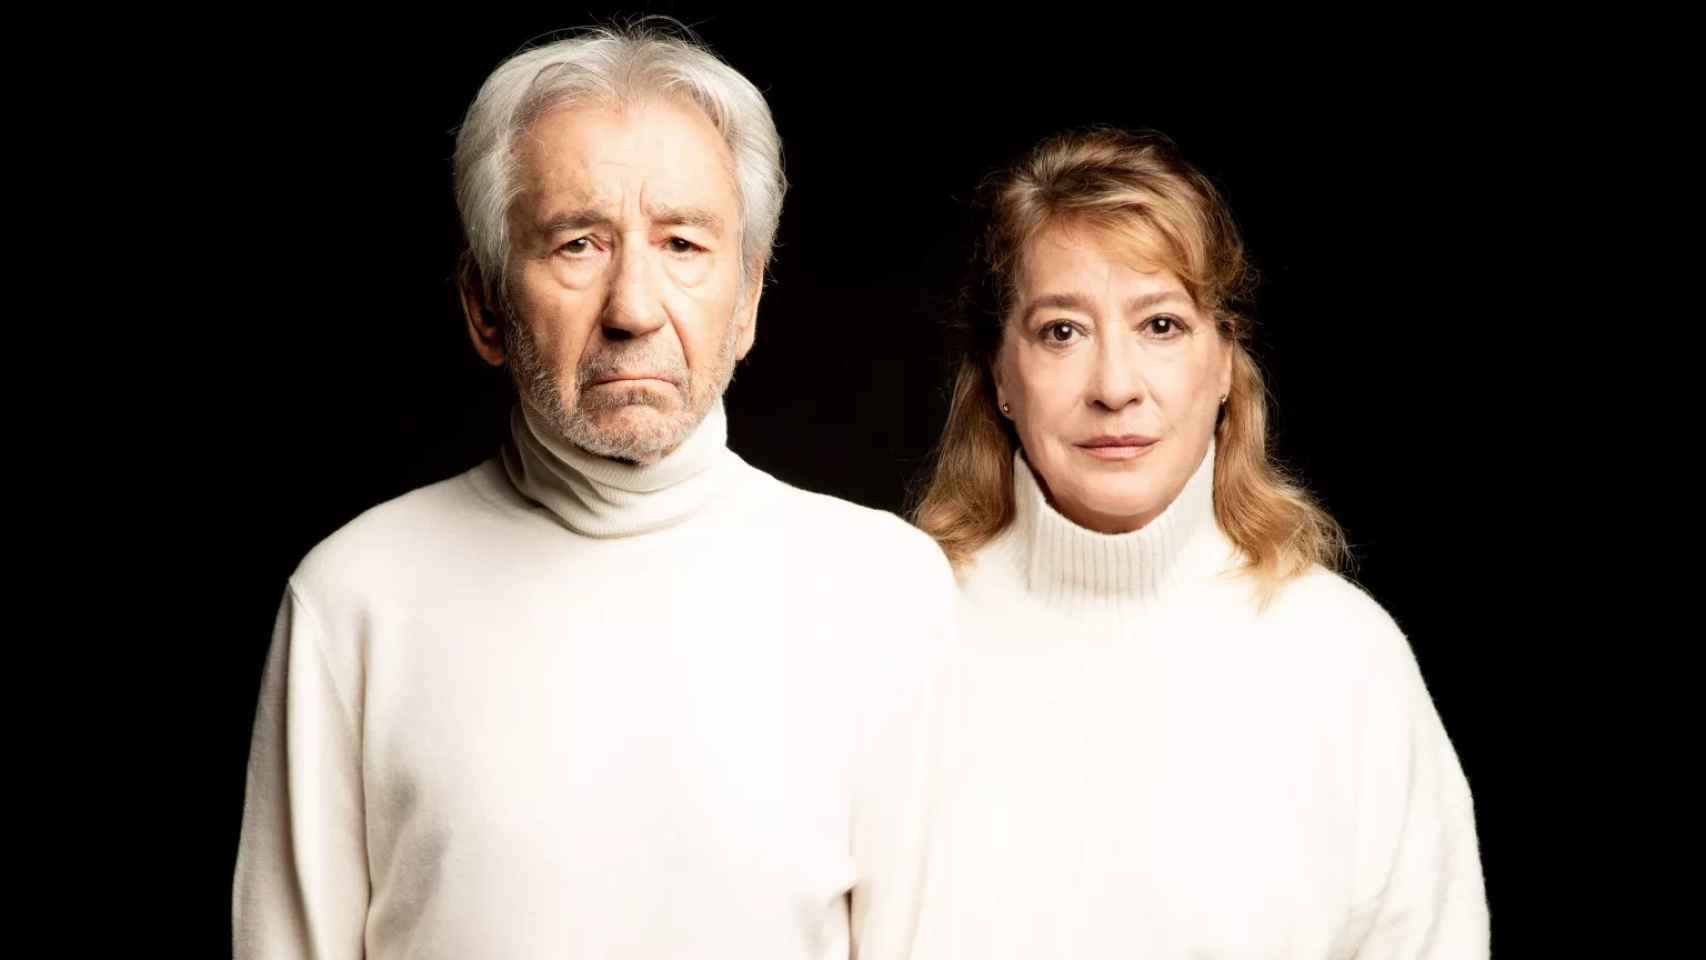 Jose Sacristán y Ana Marzoa en 'La coleccion', obra teatral de Juan Mayorga